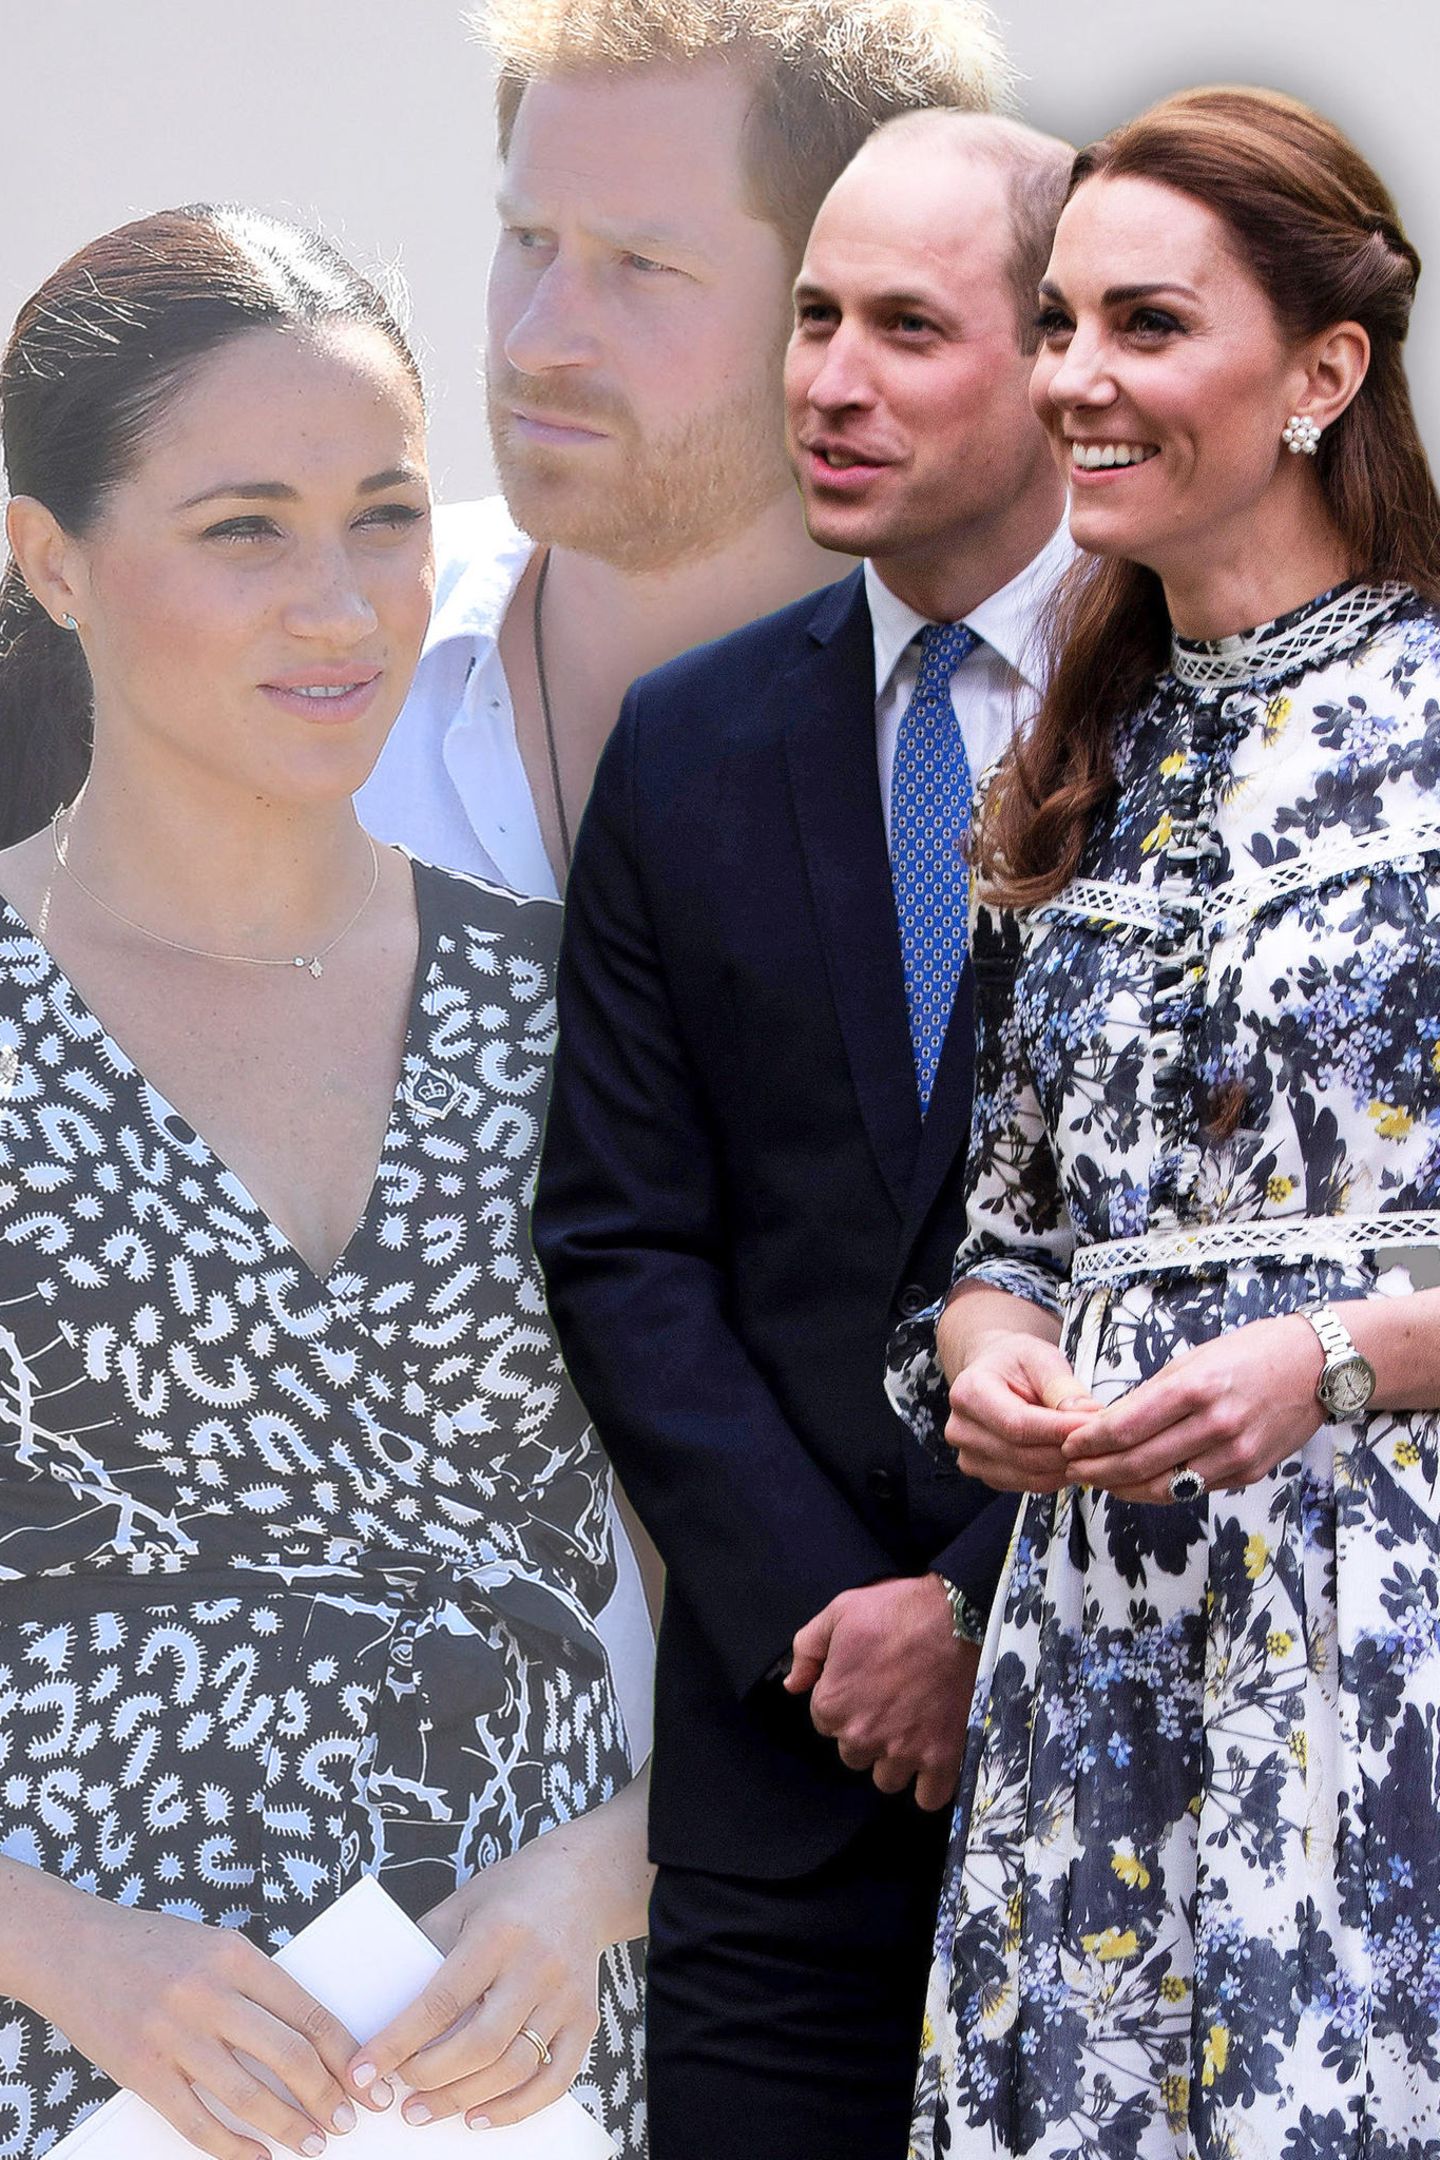 Herzogin Meghan, Prinz Harry, Prinz William und Herzogin Catherine, die ehemaligen "Fantastischen Vier" des britischen Königshauses.